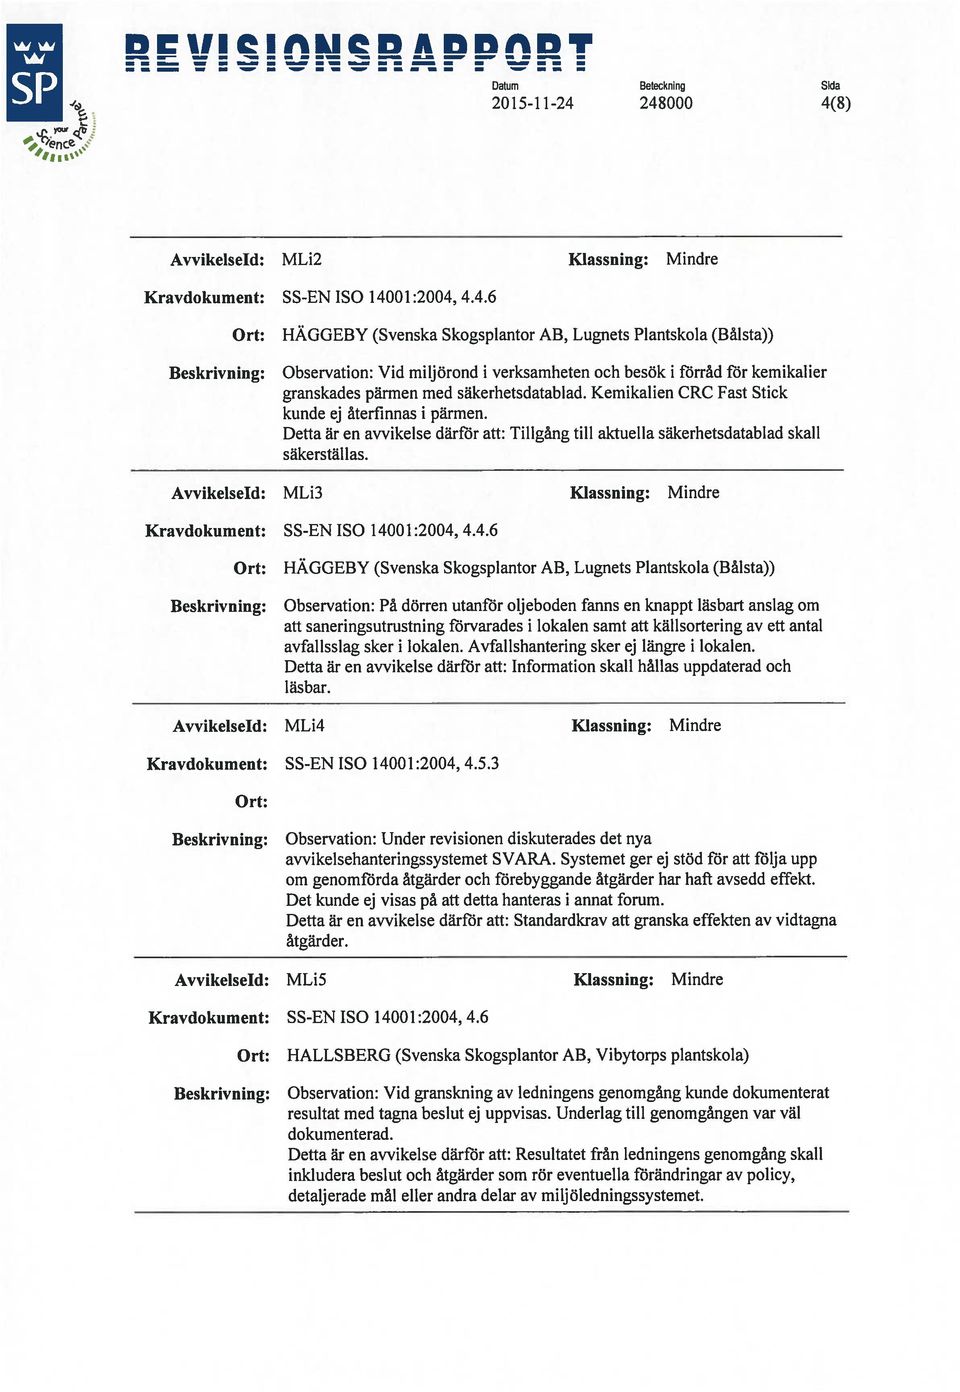 Avvikelseld: MLi3 Klassning: Mindre Kravdokument: SS-EN ISO 140